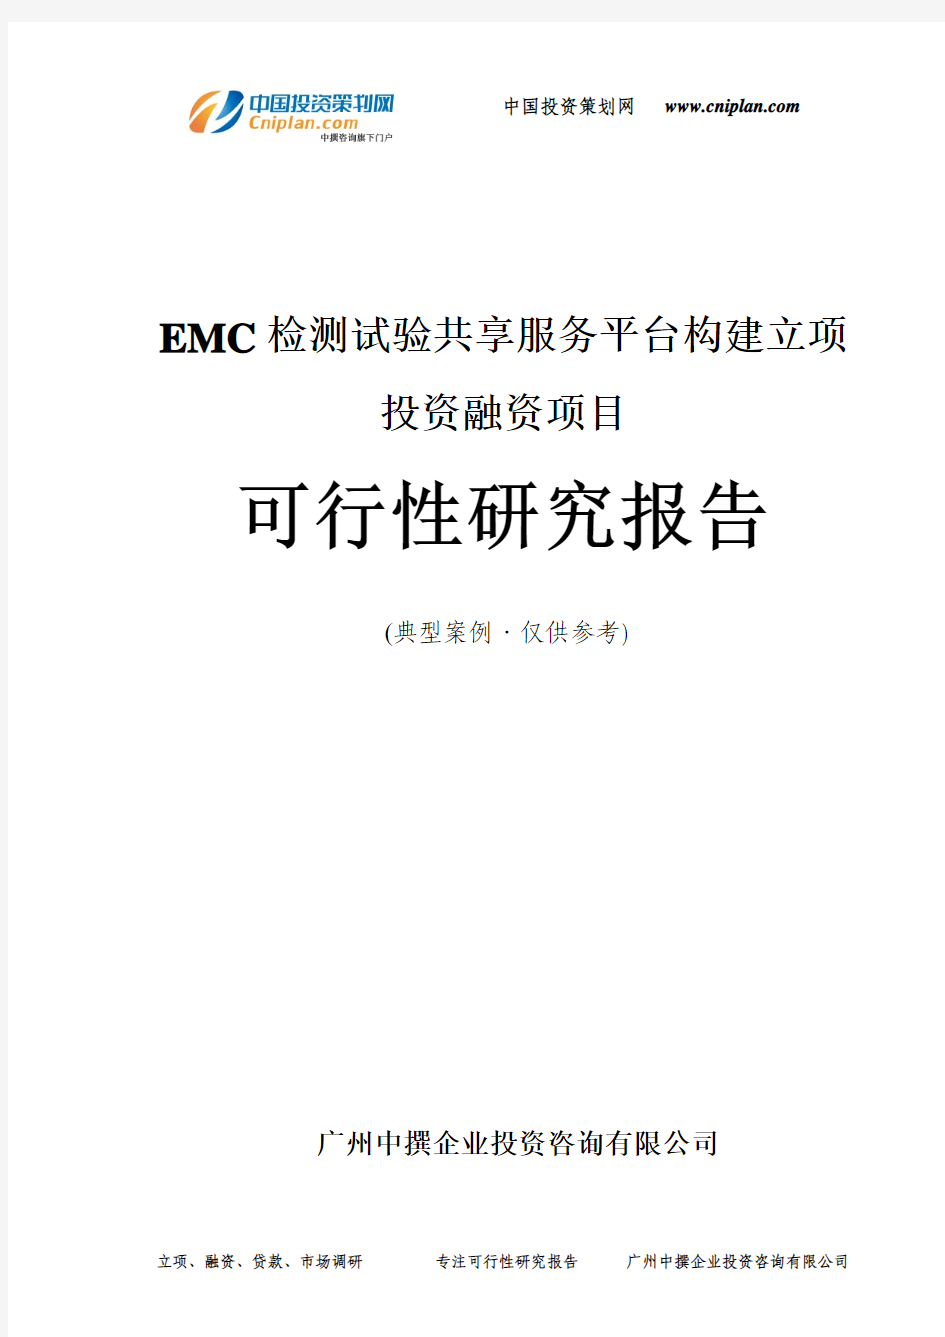 EMC检测试验共享服务平台构建融资投资立项项目可行性研究报告(中撰咨询)